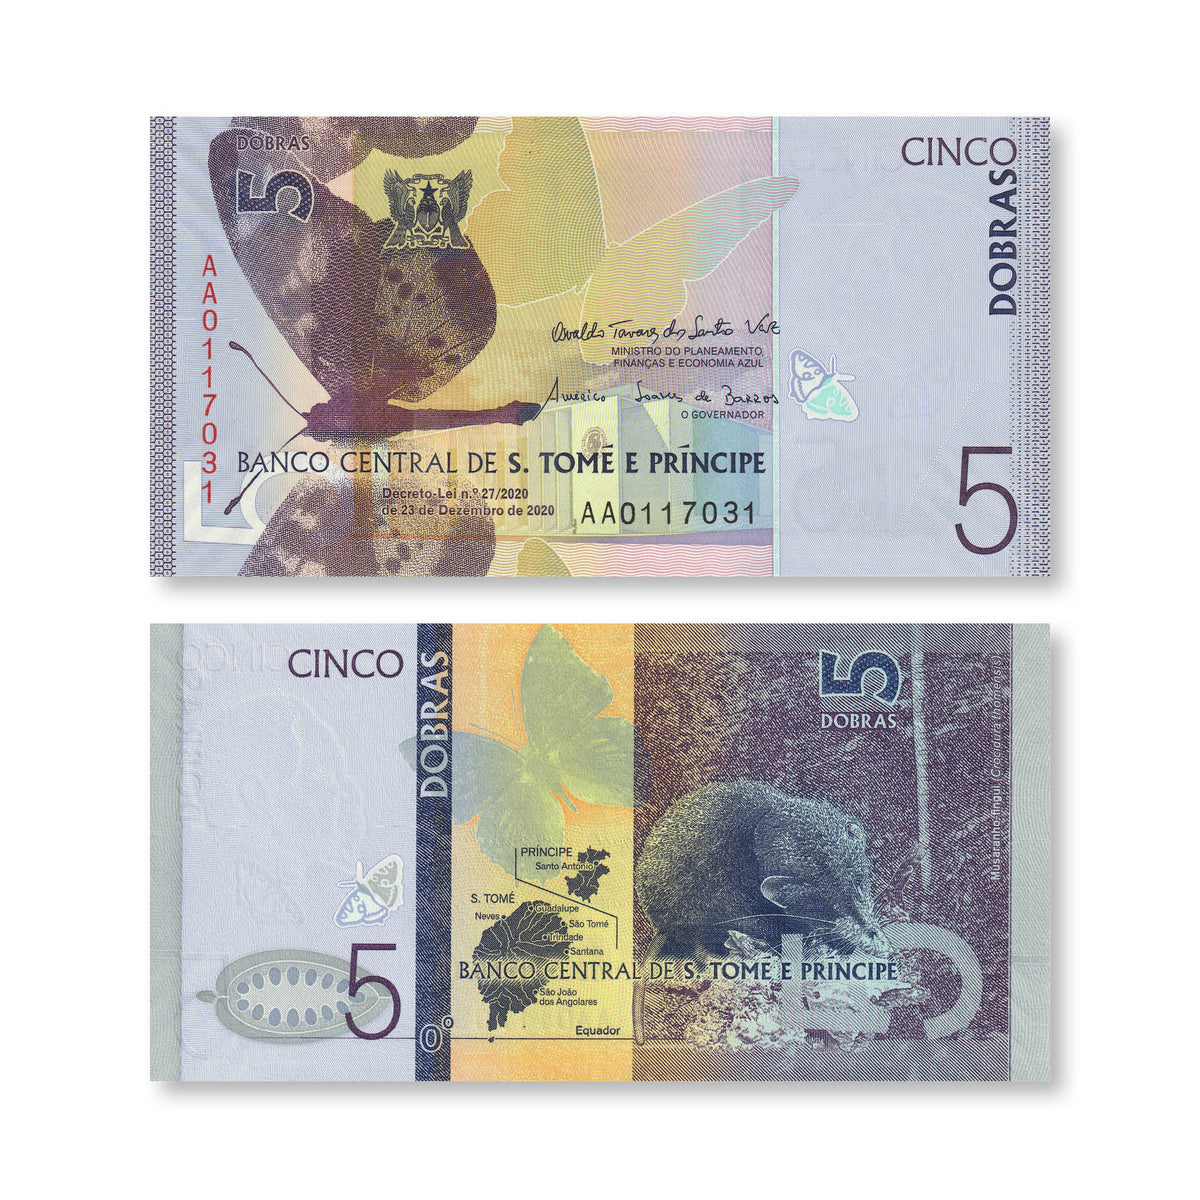 São Tomé & Príncipe 5 Dobras, 2020, B314a, UNC - Robert's World Money - World Banknotes